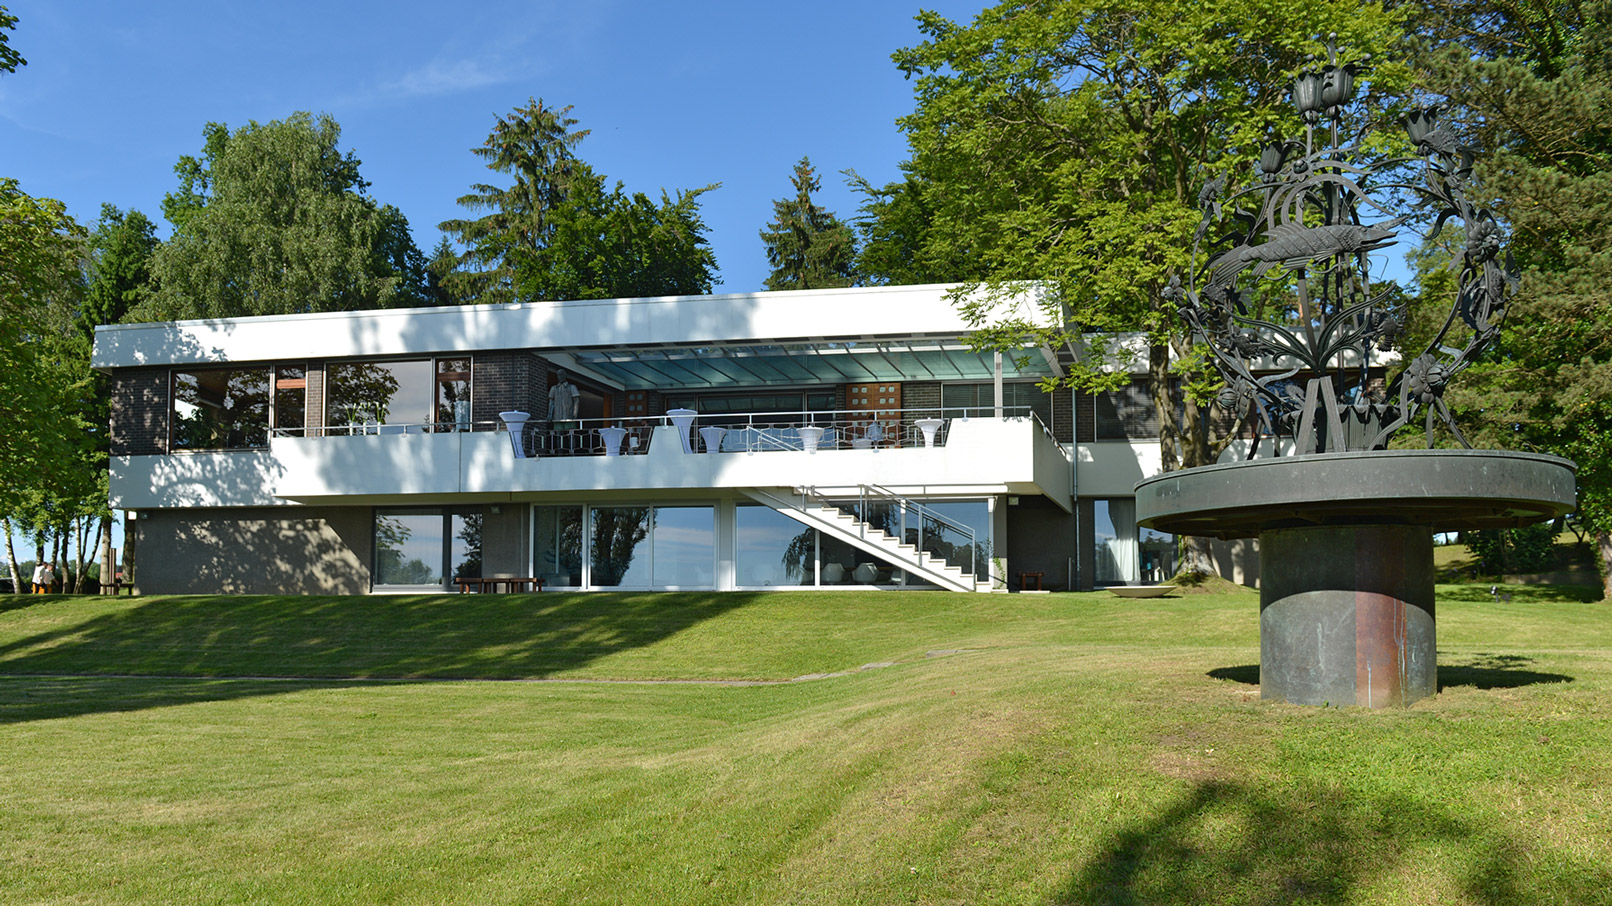 Villa Wagner